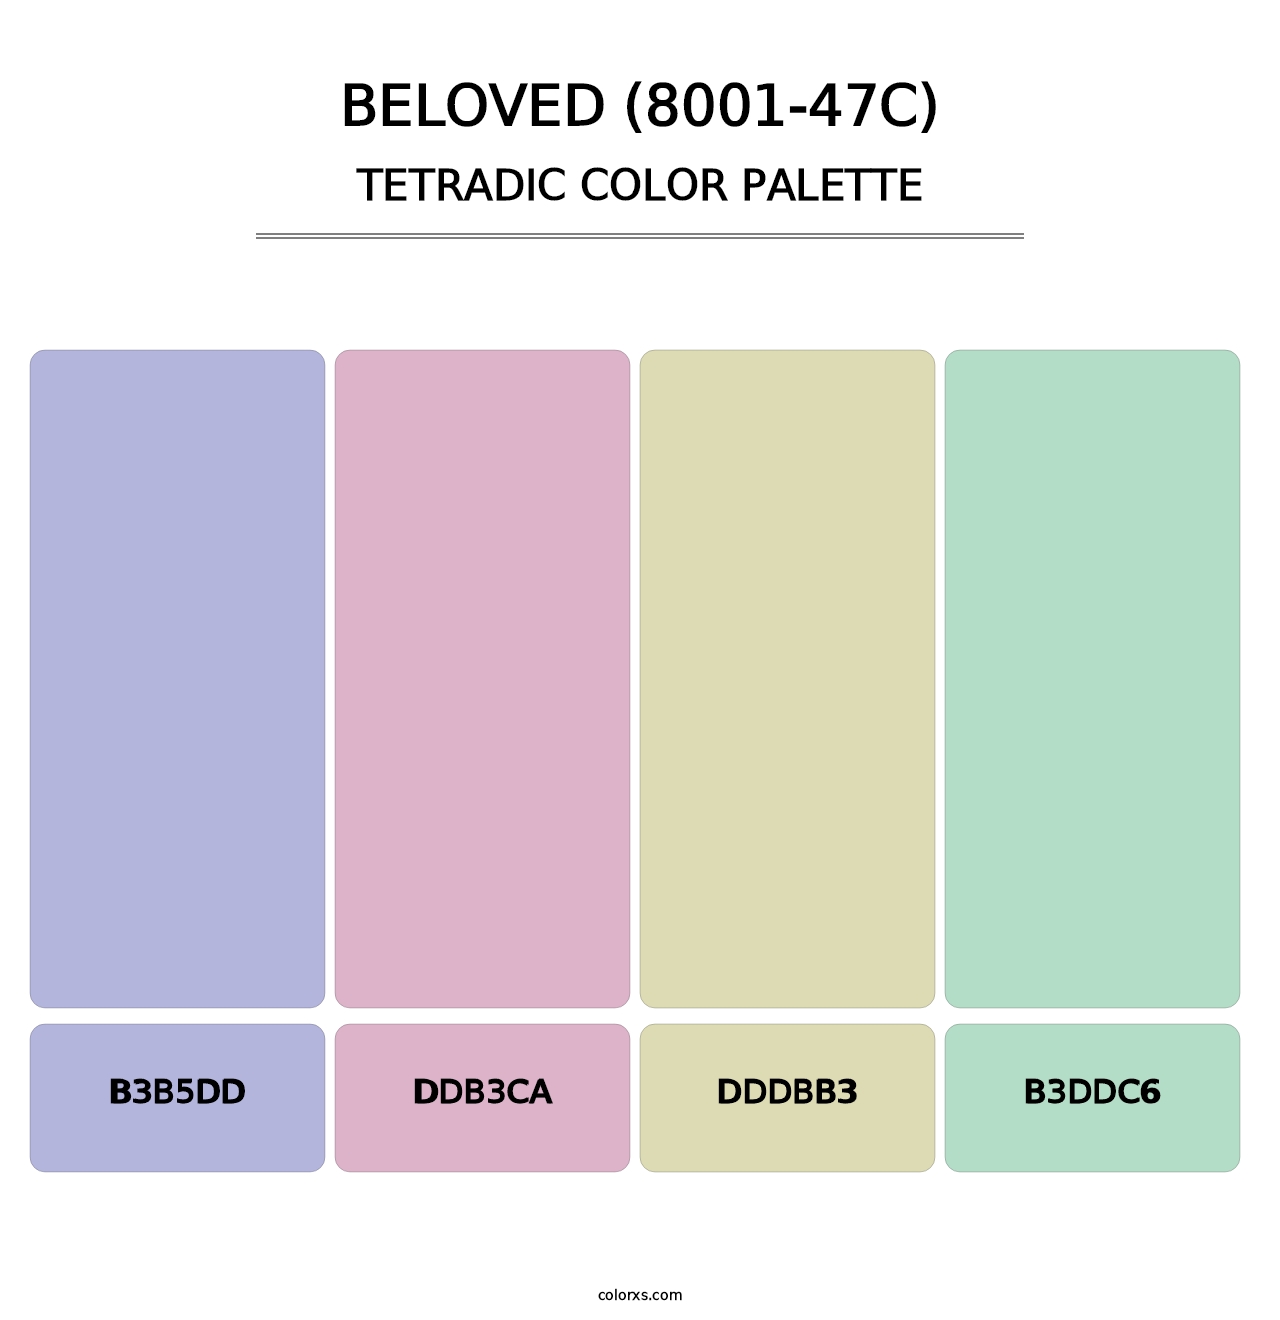 Beloved (8001-47C) - Tetradic Color Palette